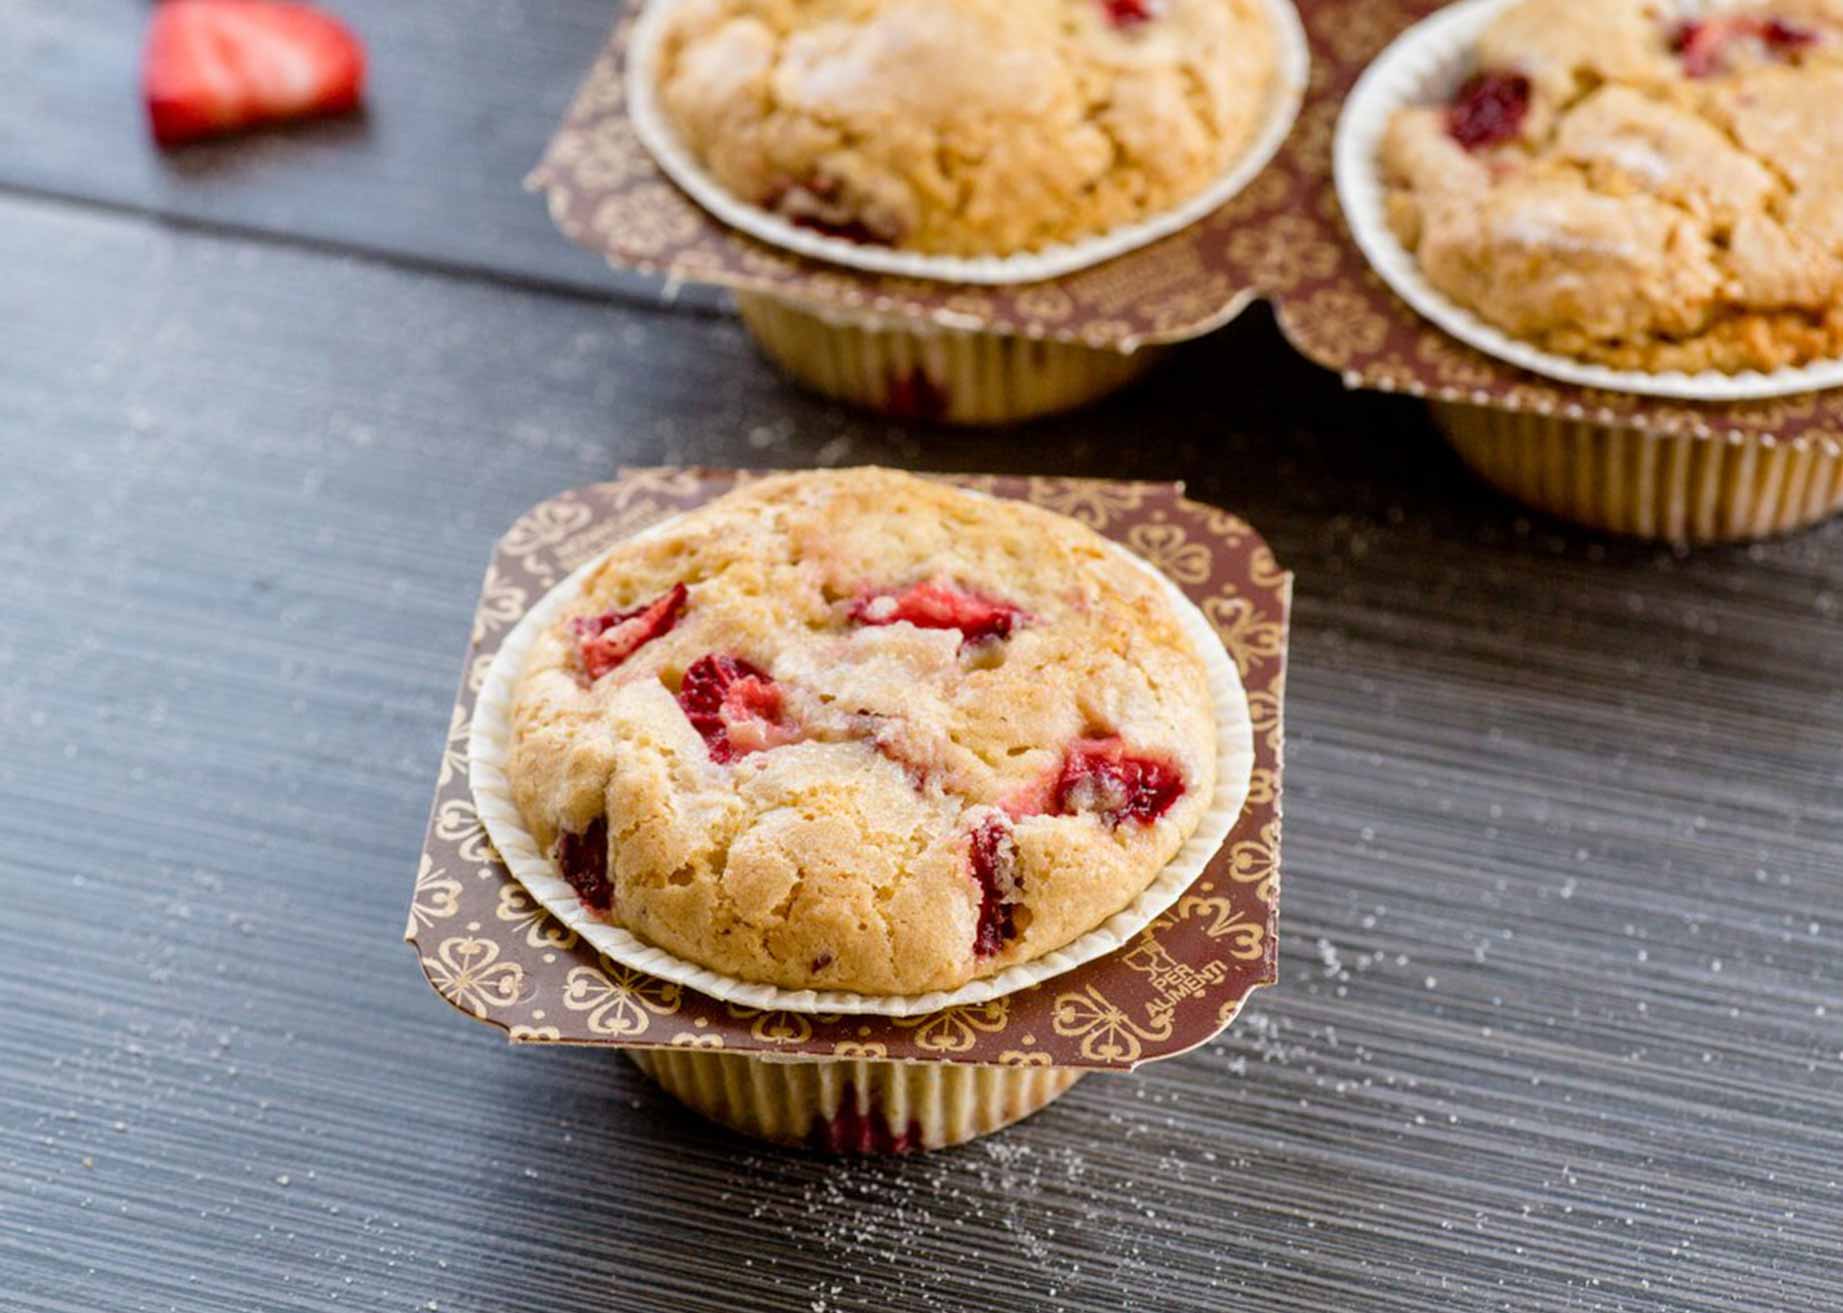 Novacart NTS muffin tray single strawberry muffin